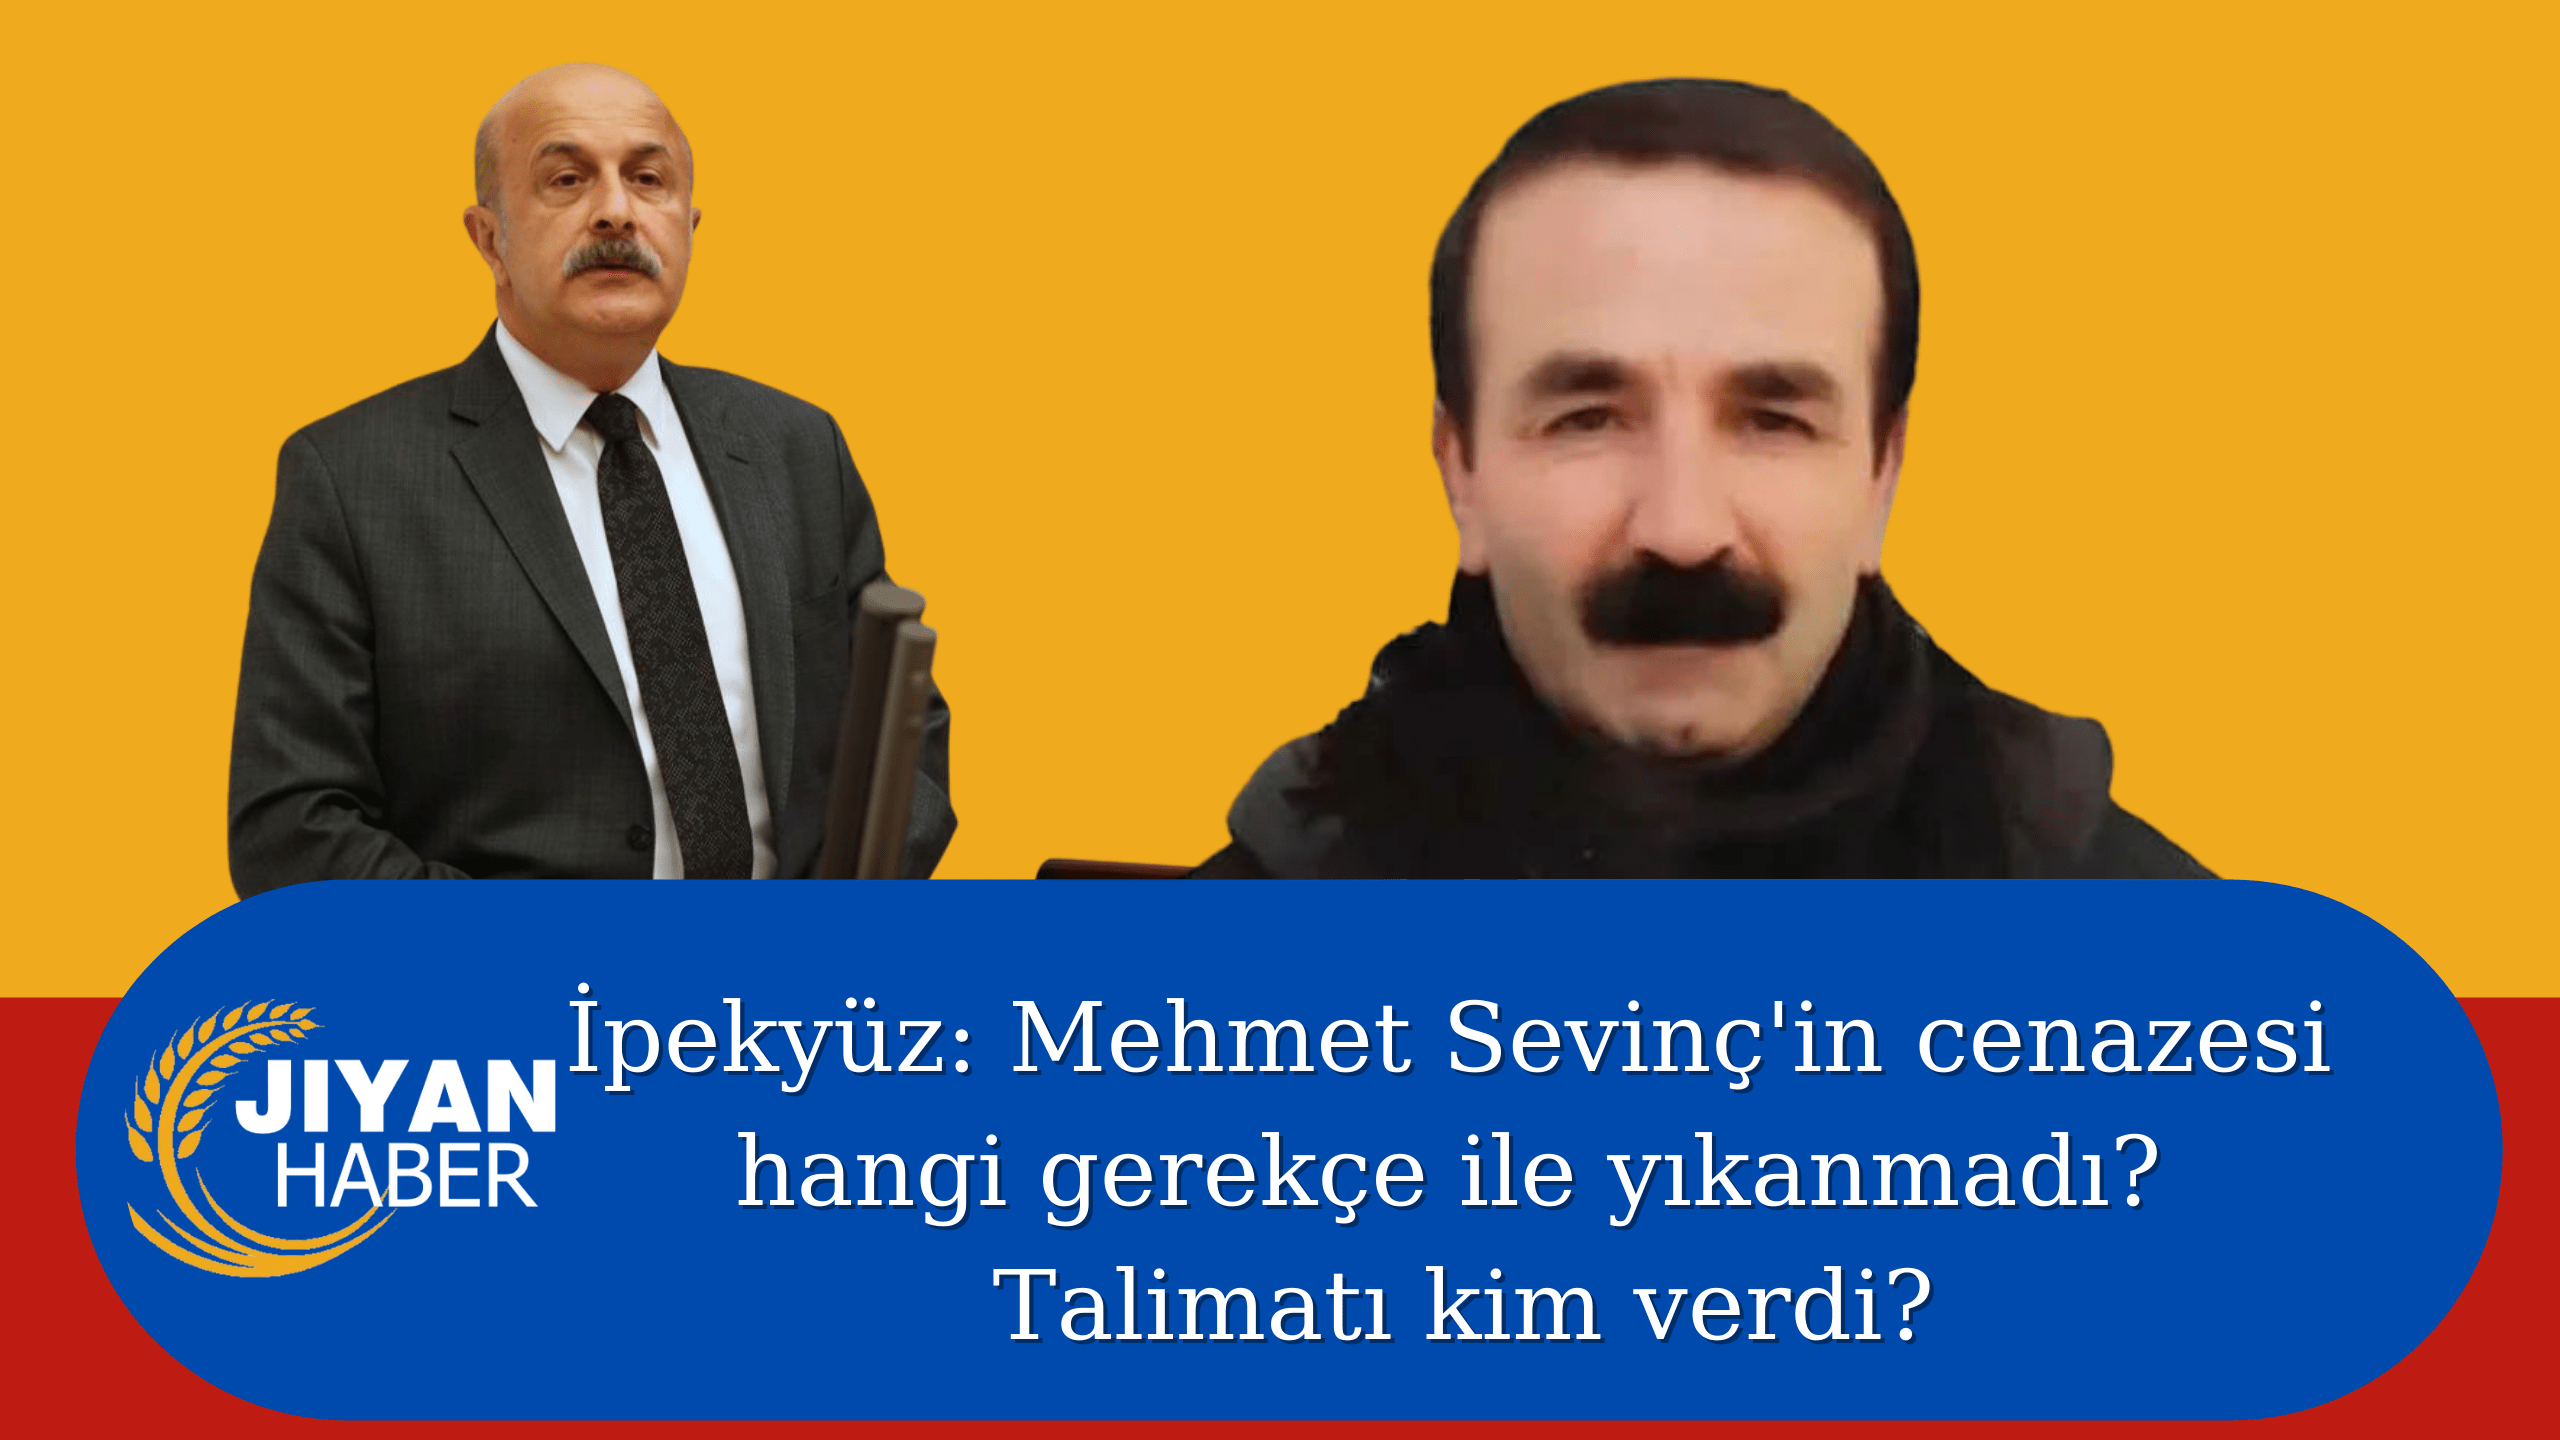 İpekyüz: Mehmet Sevinç’in cenazesi hangi gerekçe ile yıkanmadı? Talimatı kim verdi?